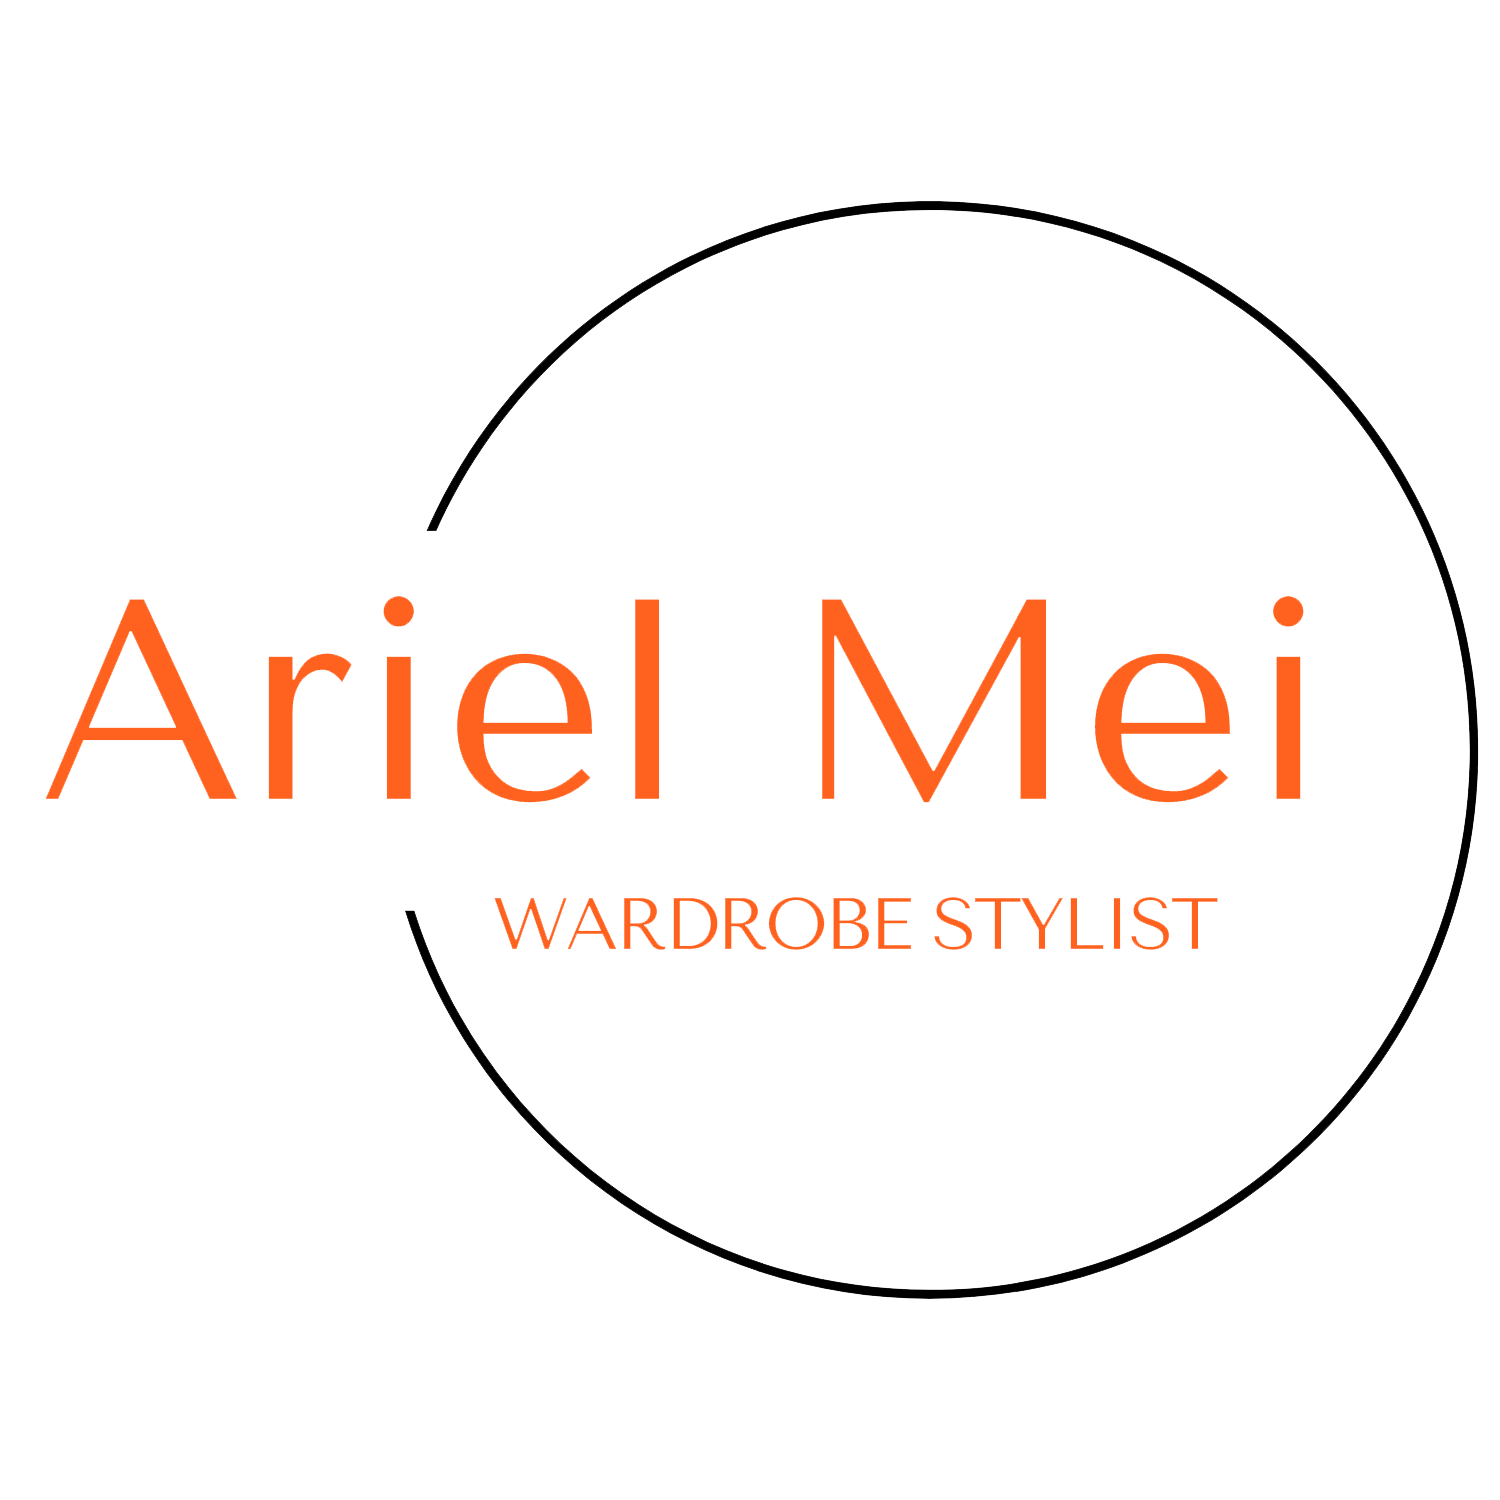 Ariel Mei